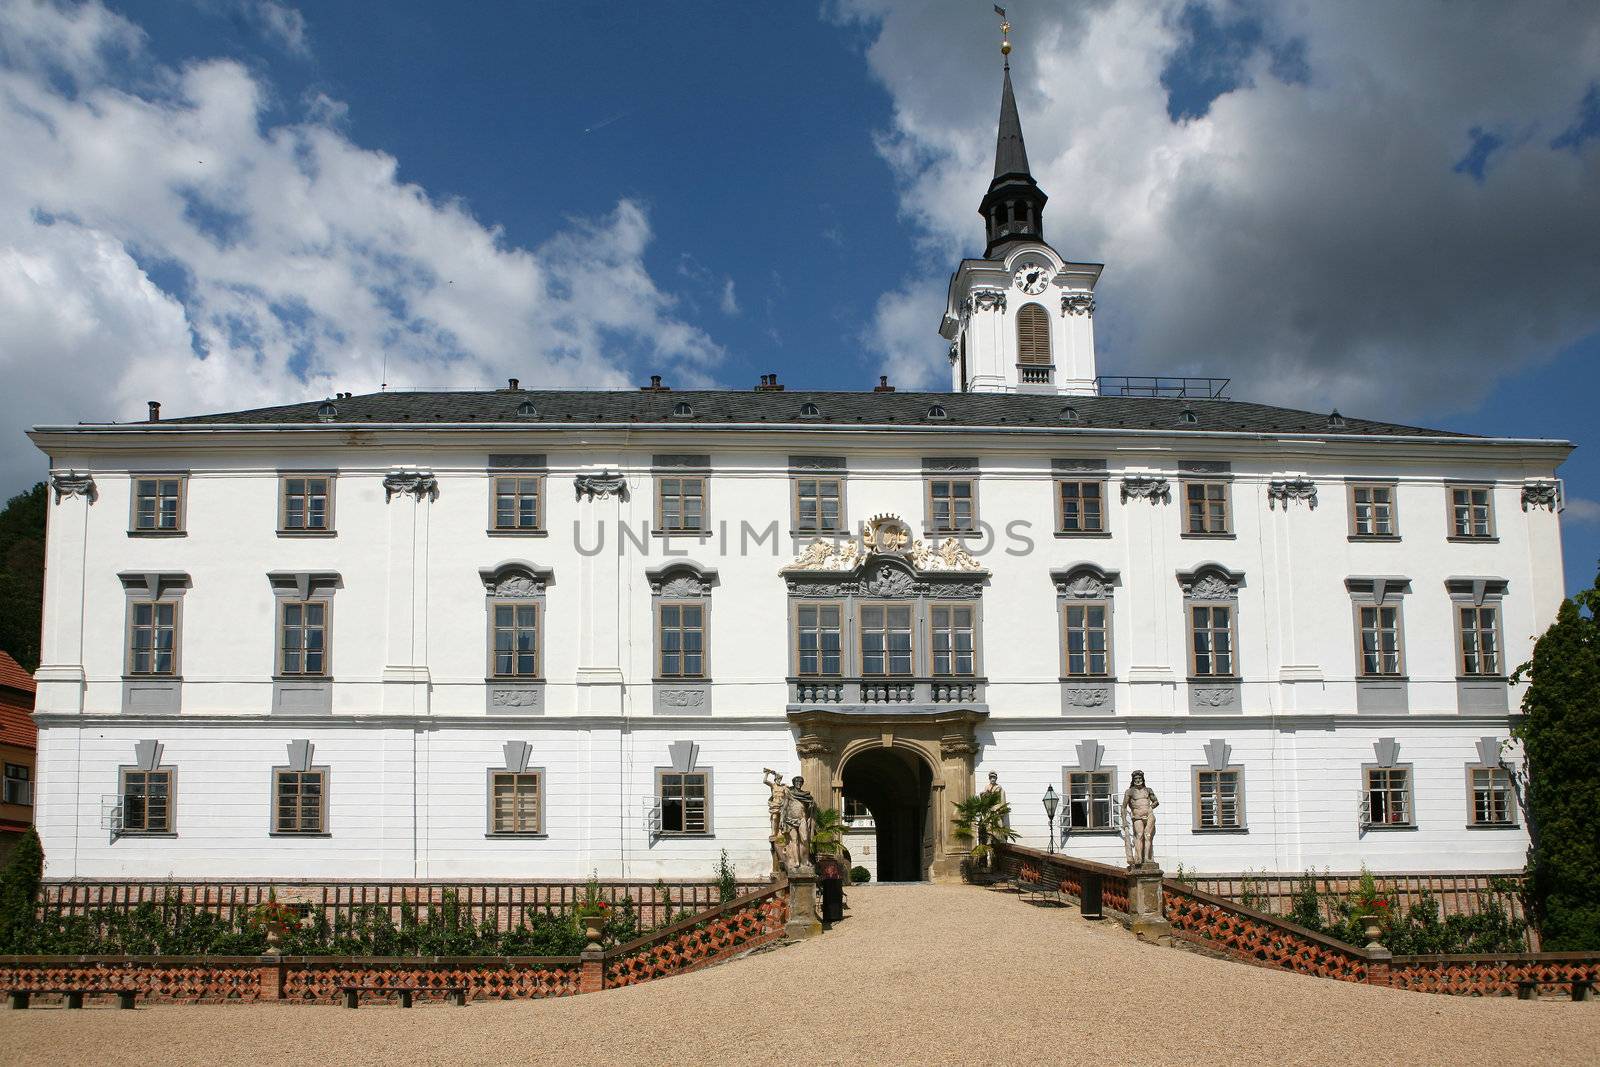 Chateau in Lysice, Czech republic by haak78